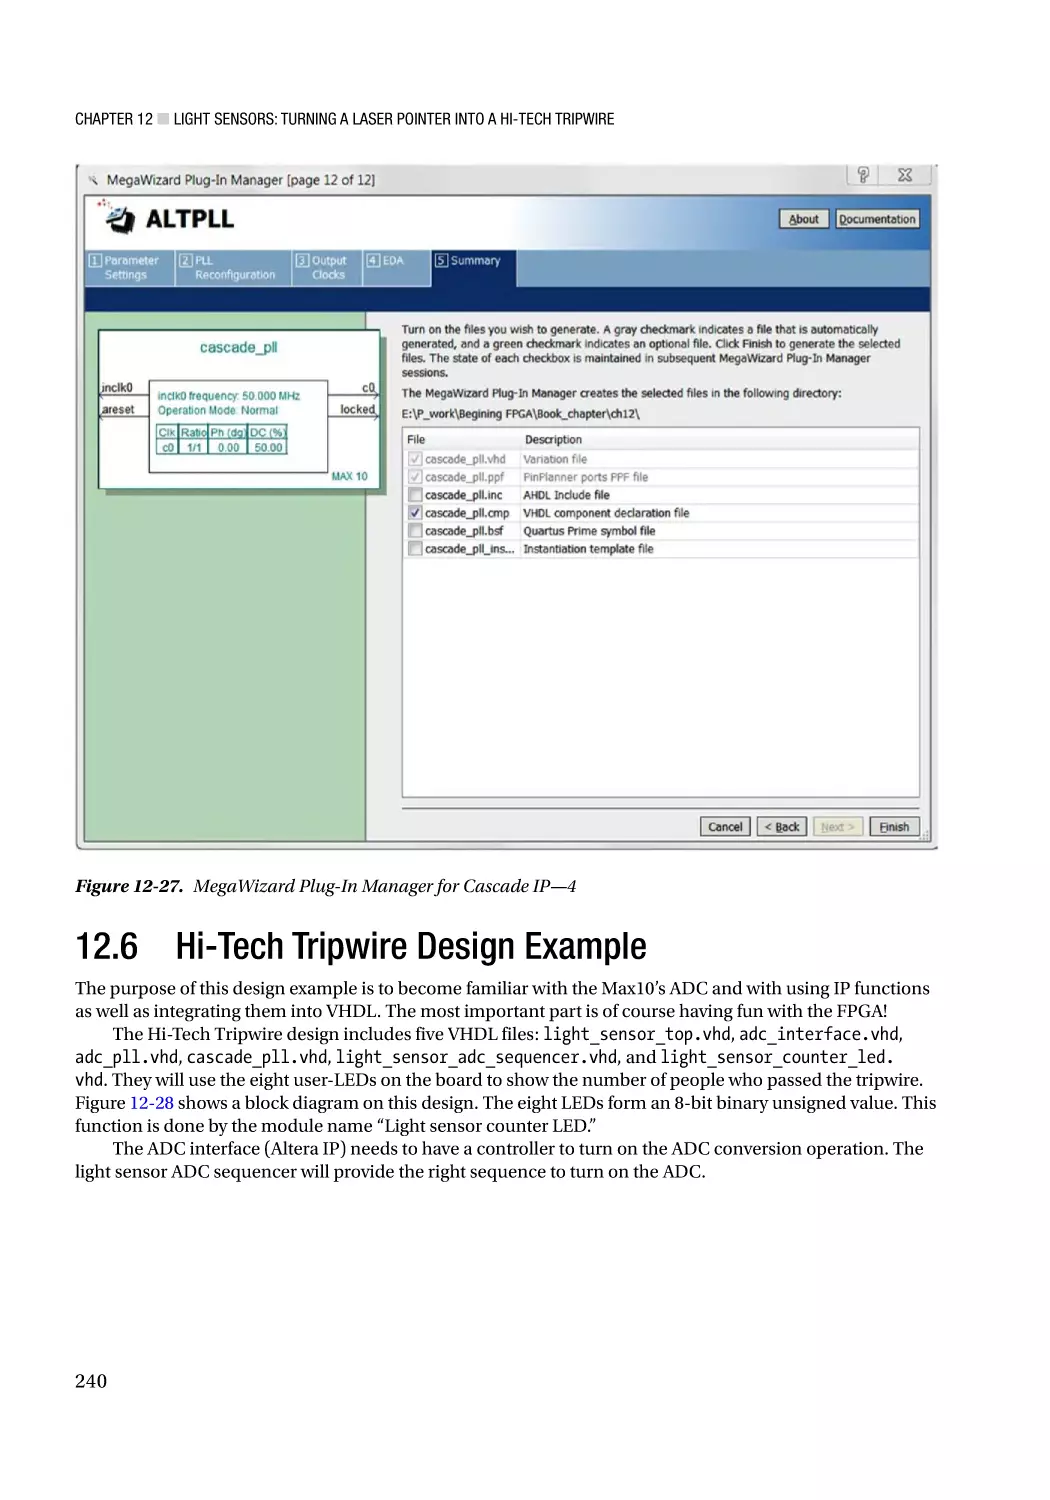 12.6 Hi-Tech Tripwire Design Example